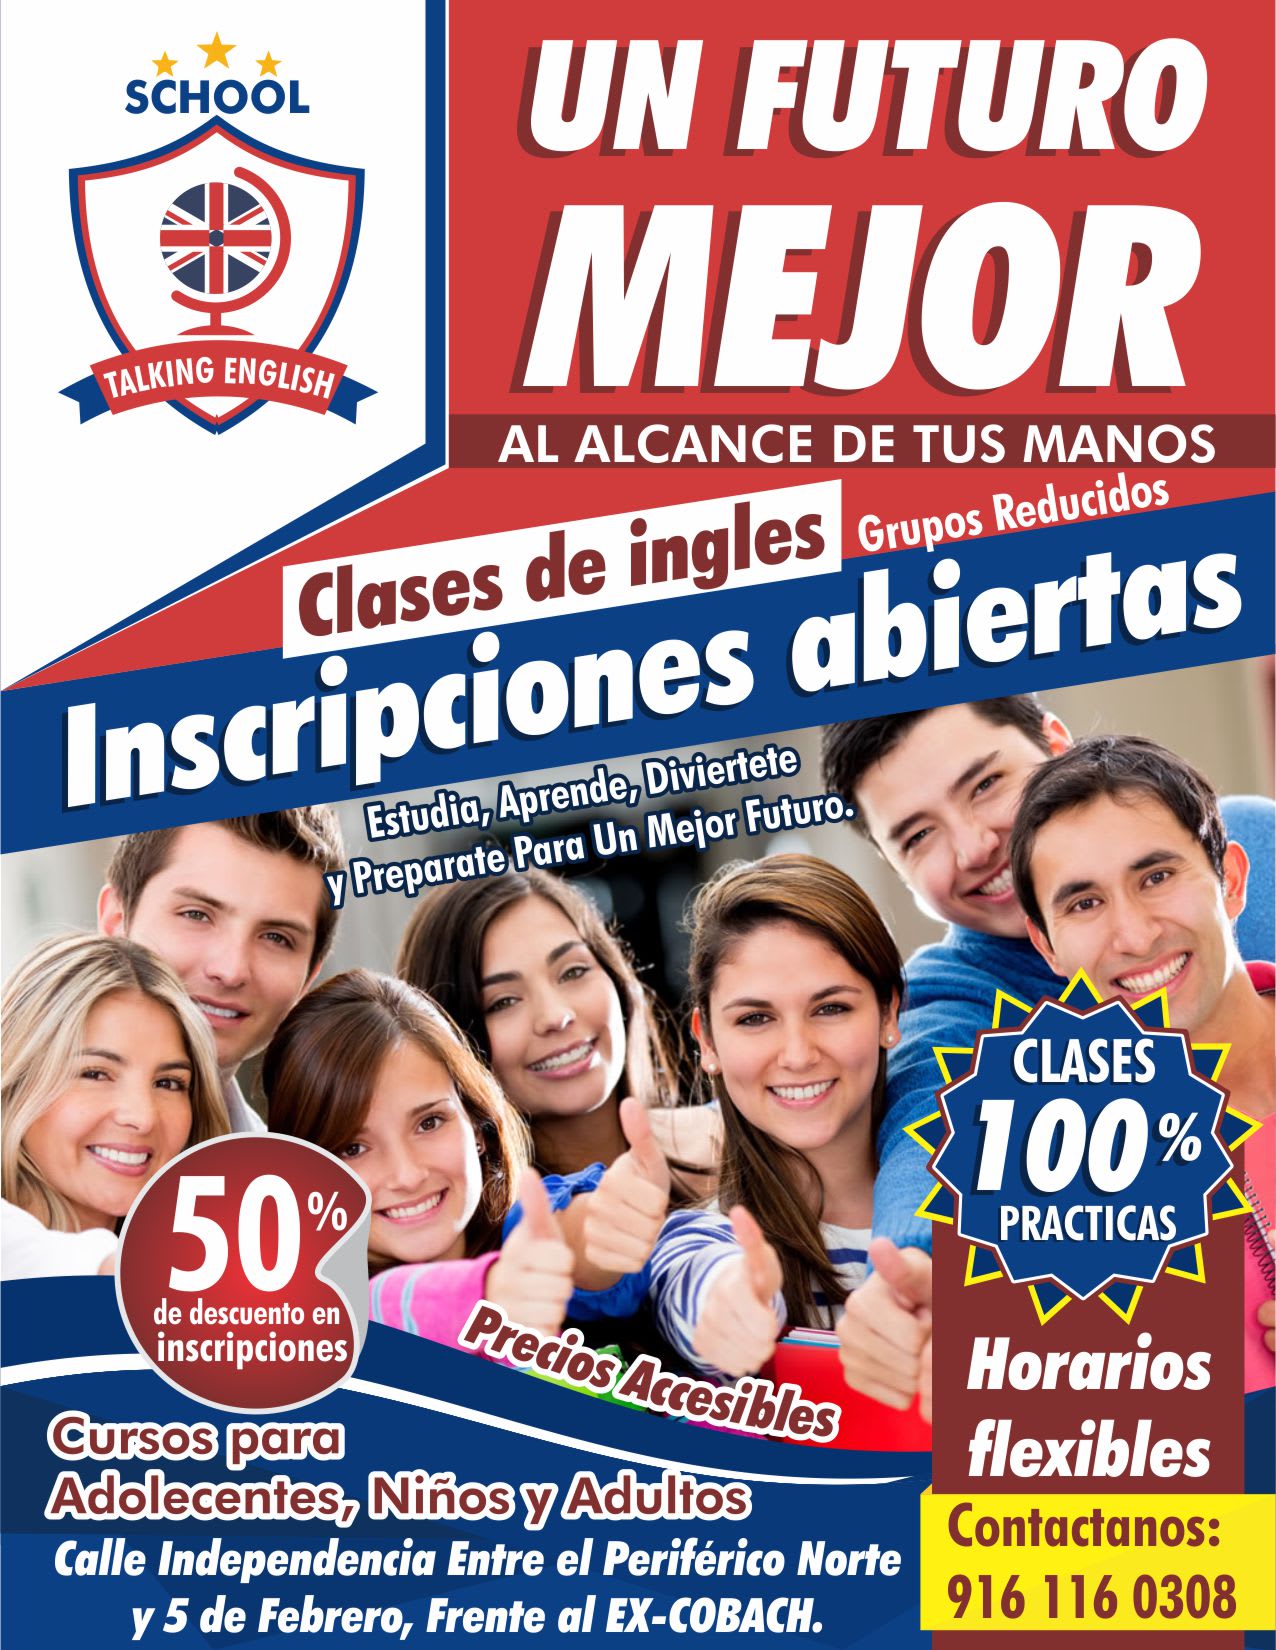 Clases de ingles en linea - Servicios de clases de ingles - Talking English  | San Cristóbal de las Casas